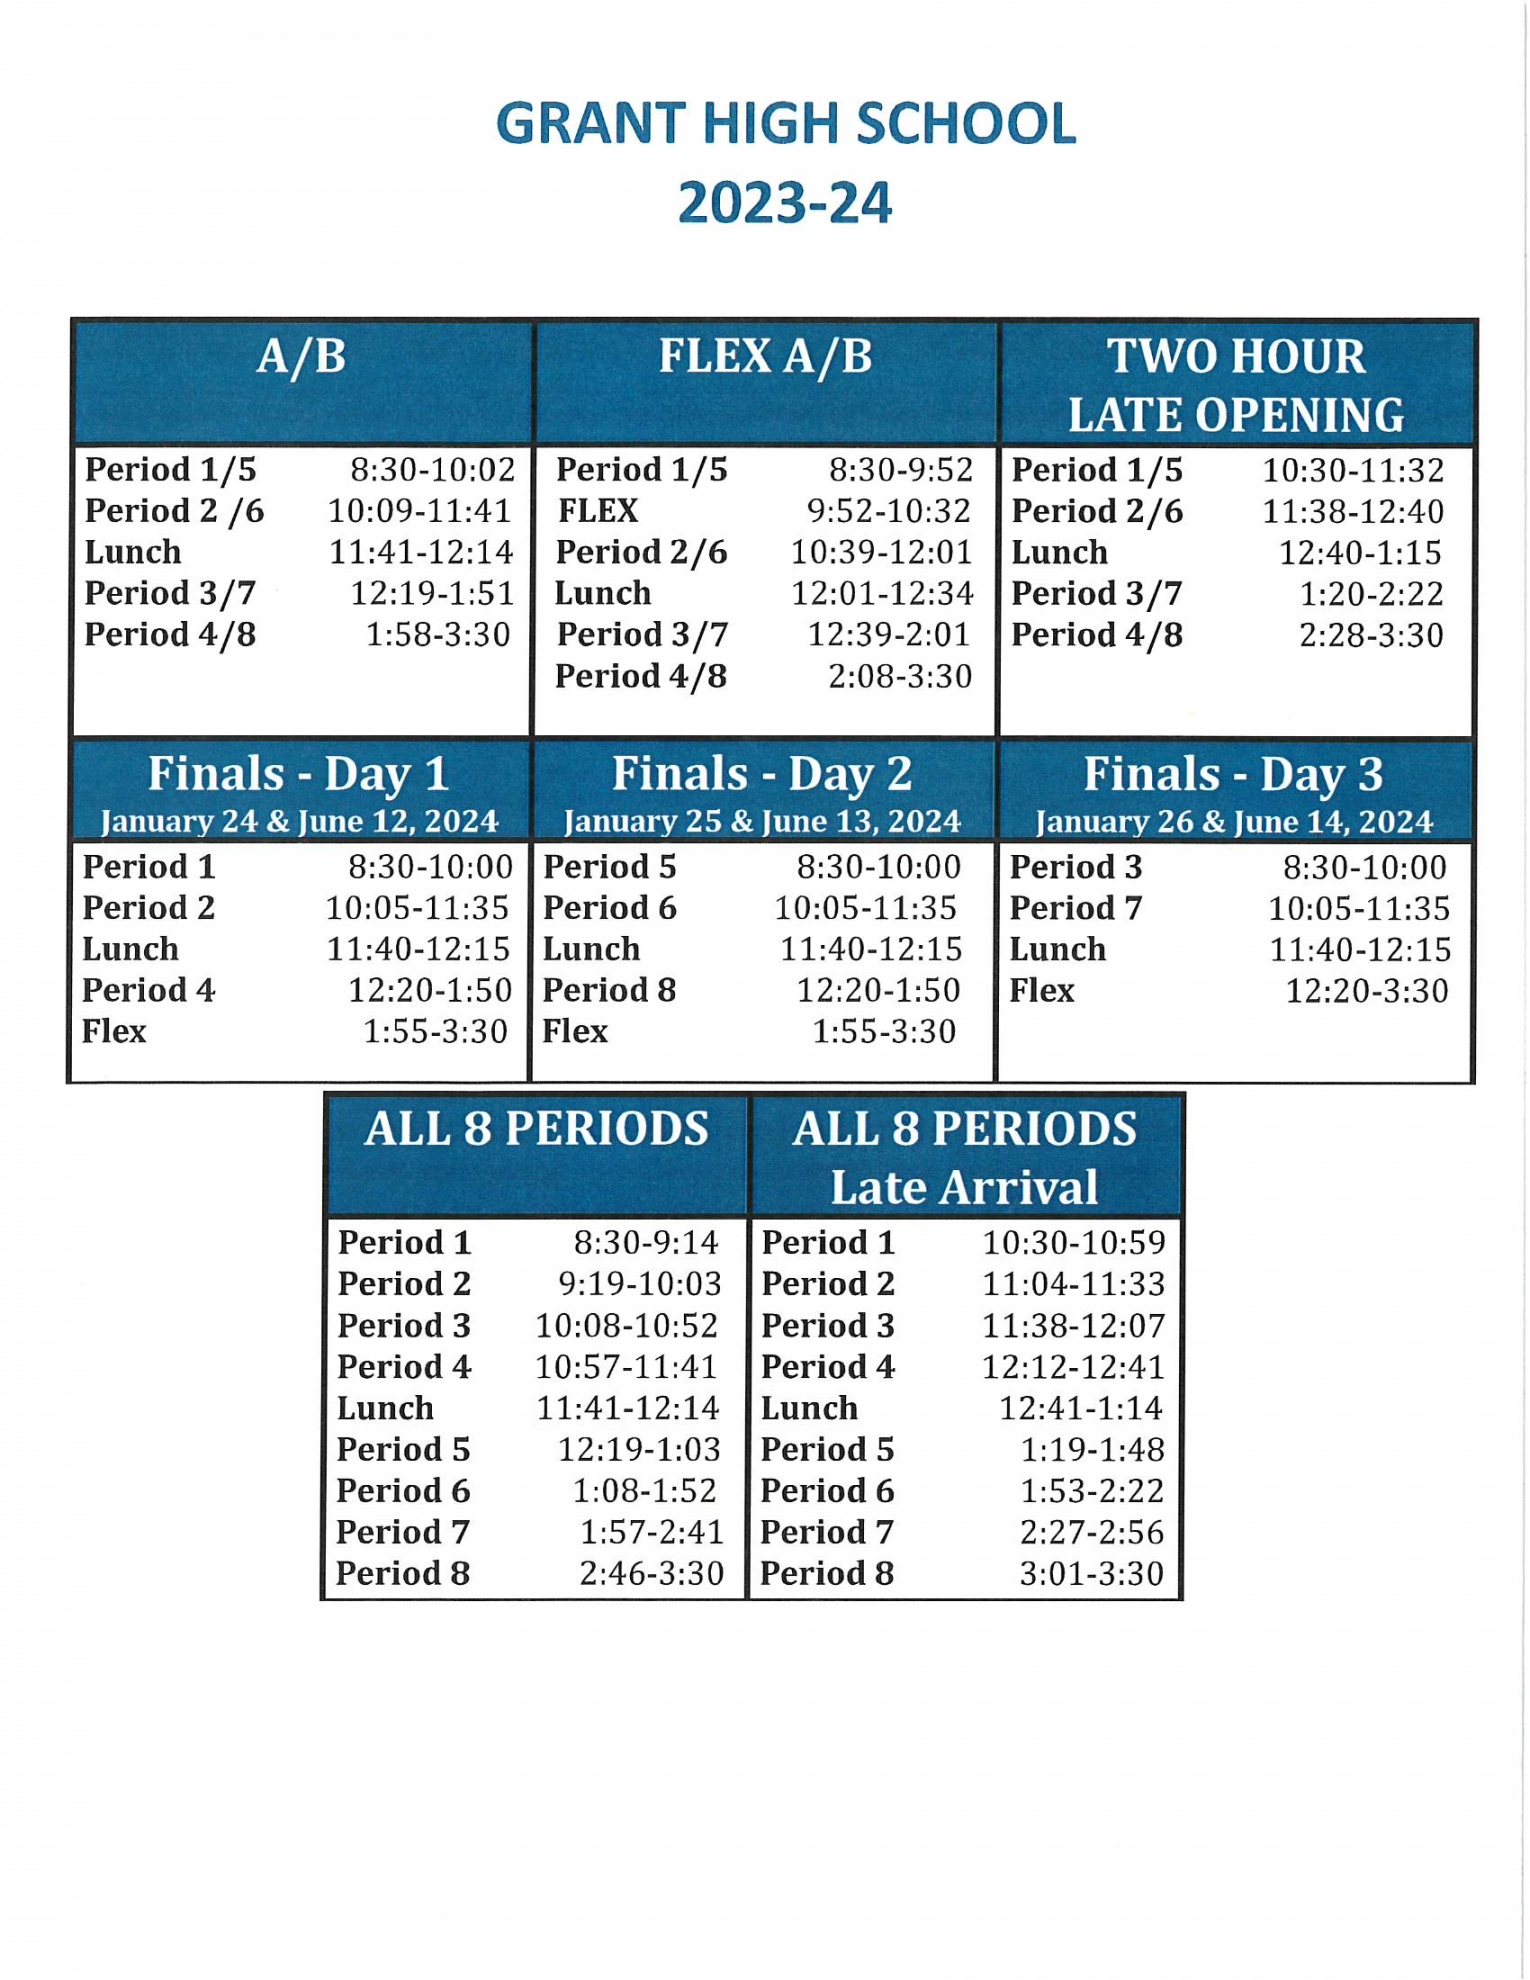 School Schedule / School Bell Schedule/Calendar -